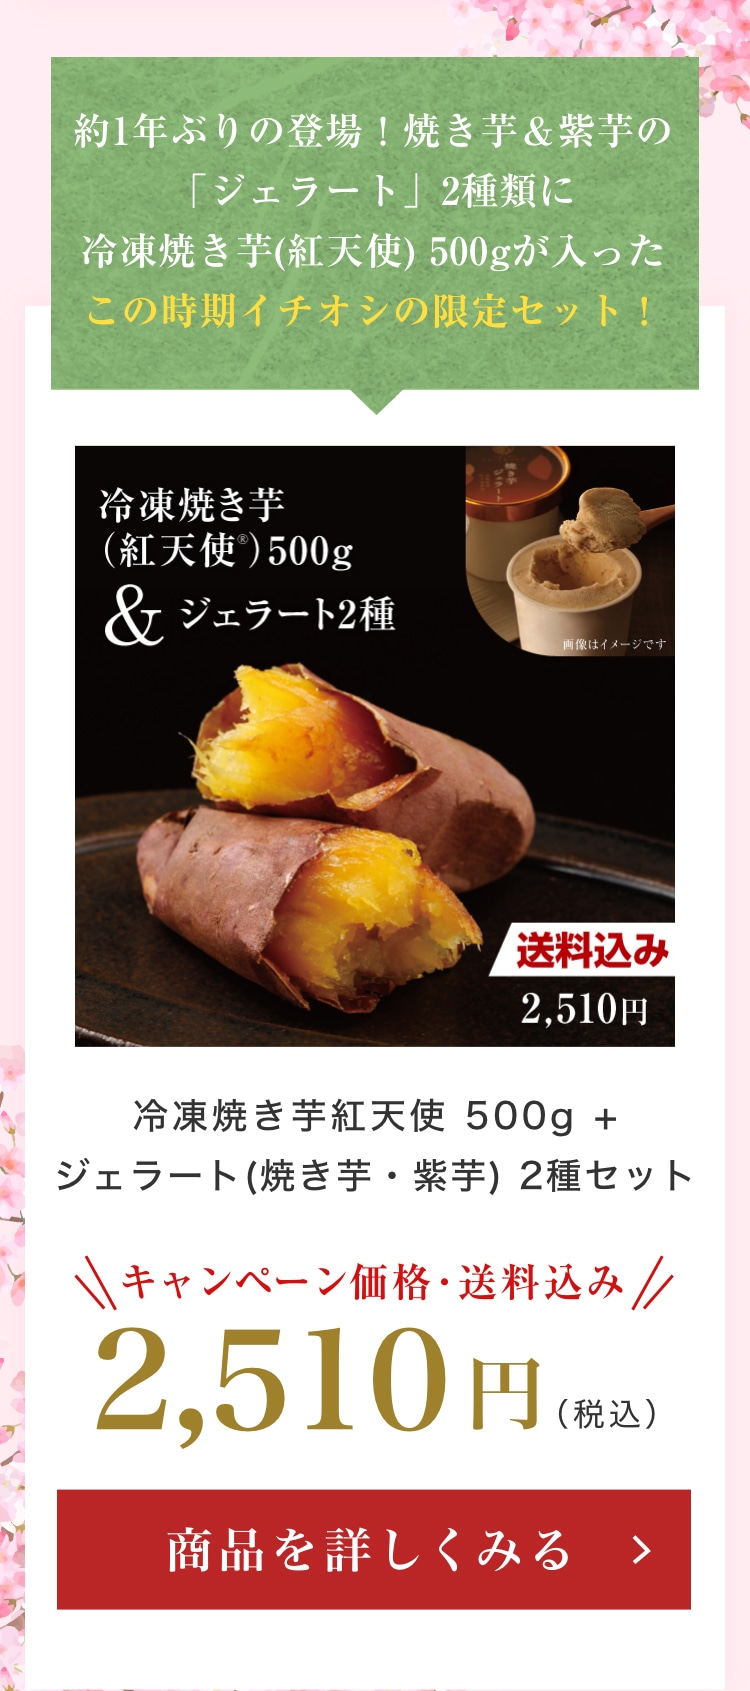 冷凍焼き芋紅天使 500g + ジェラート(焼き芋・紫芋) 2種セット